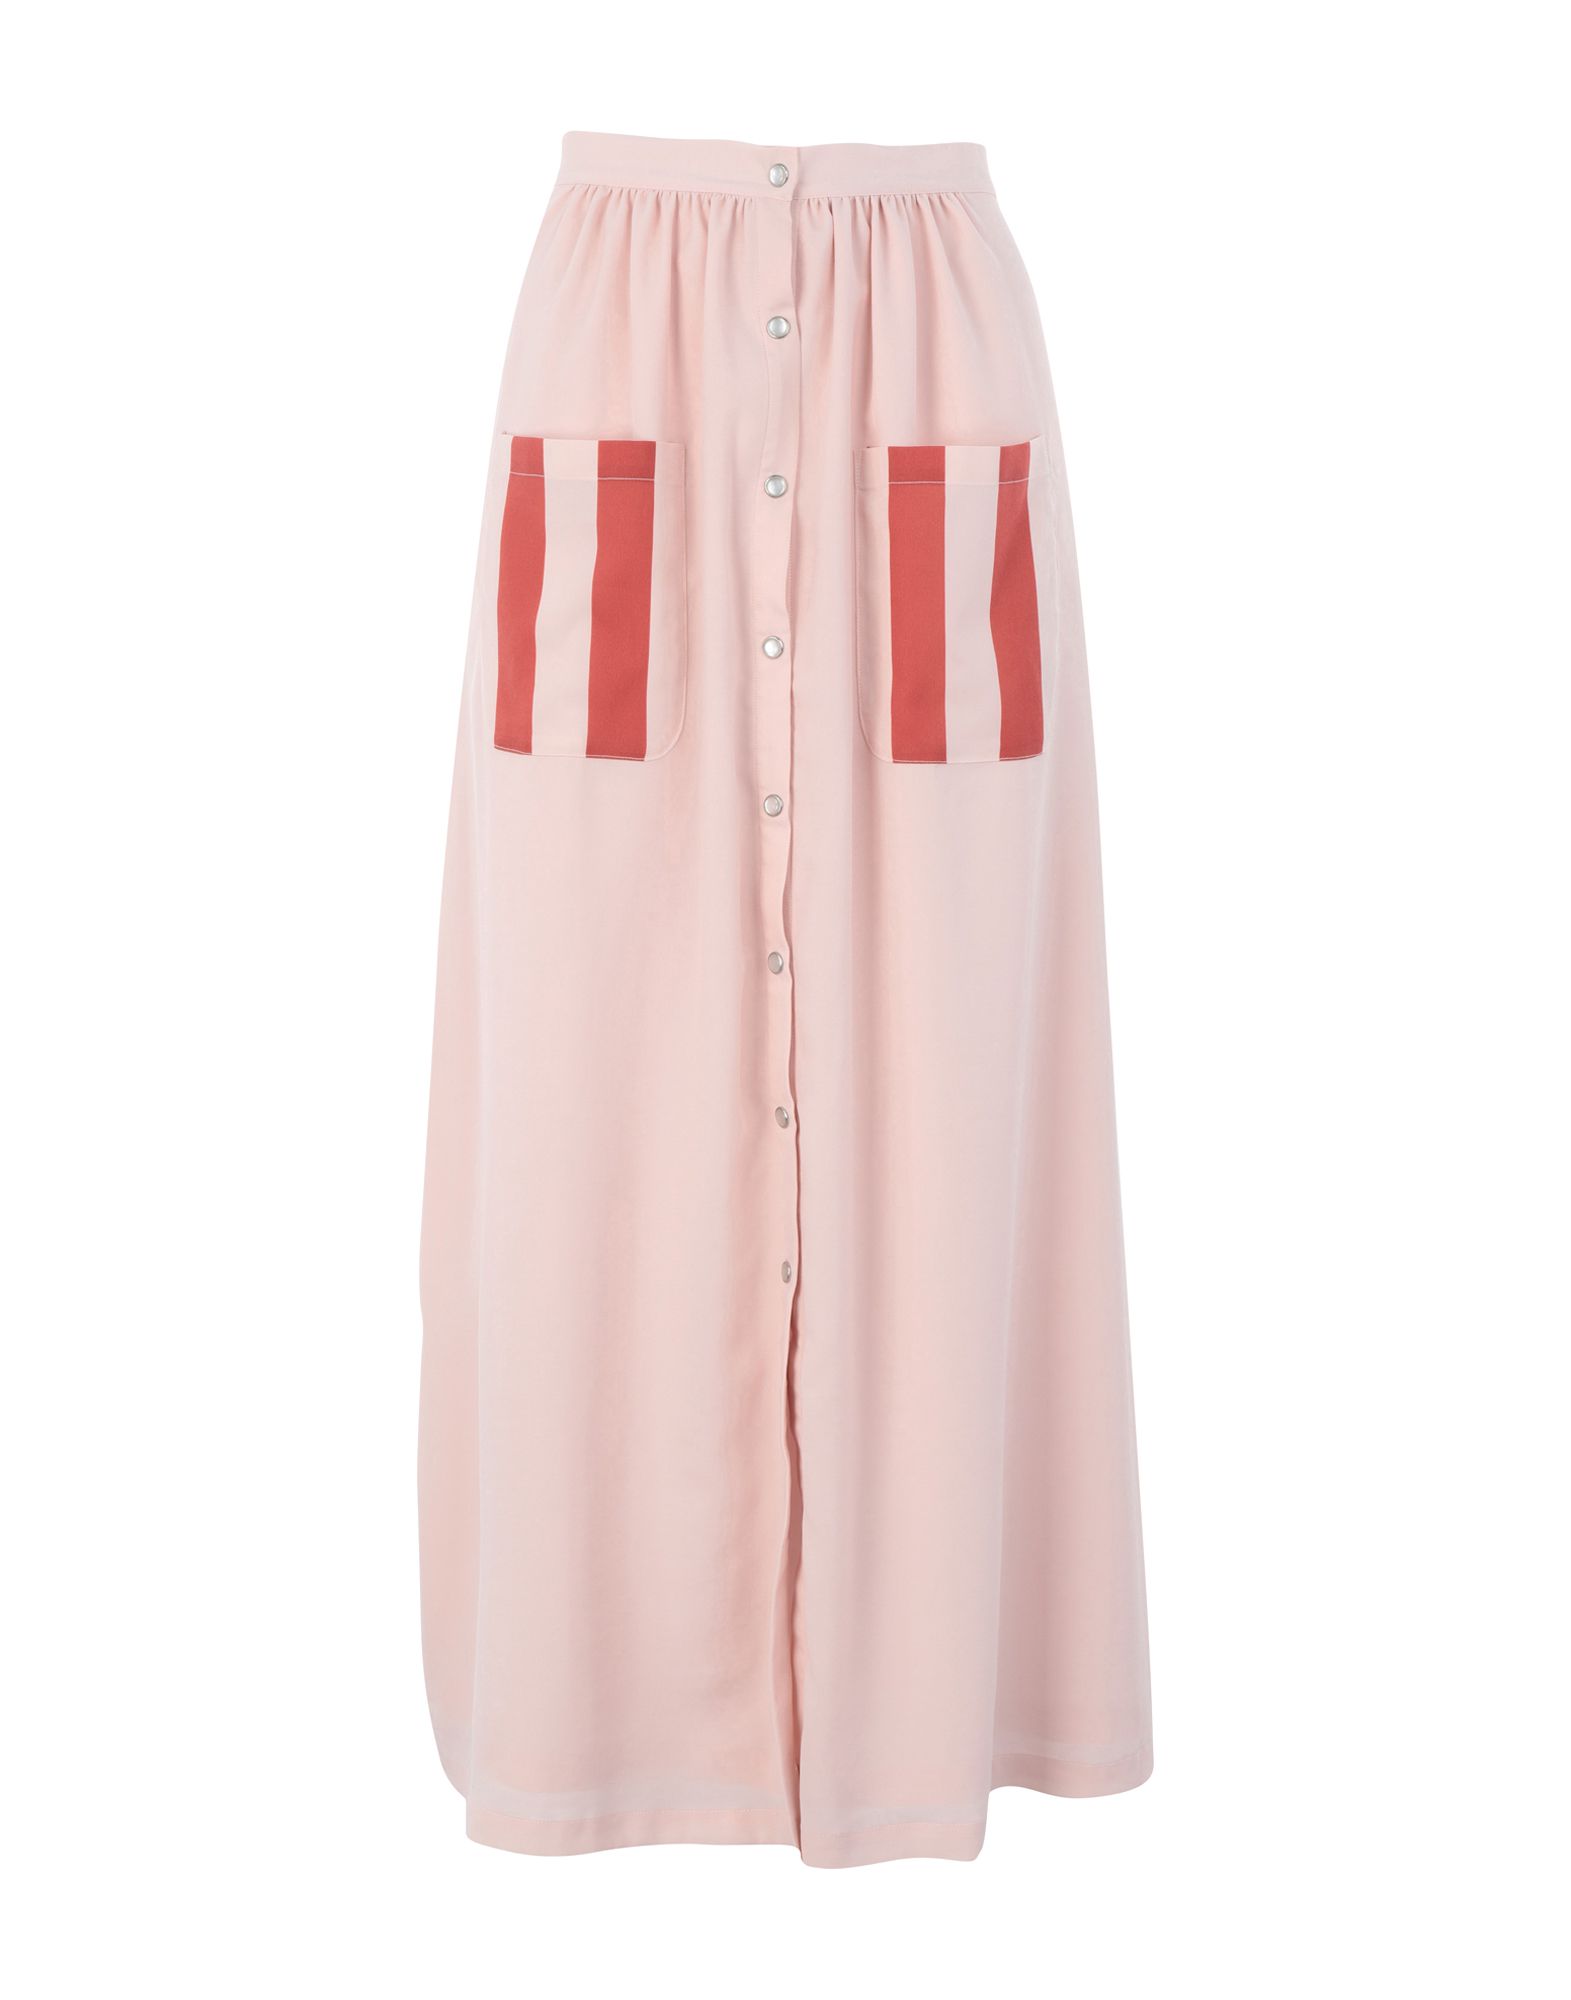 Длинная юбка  - Розовый цвет